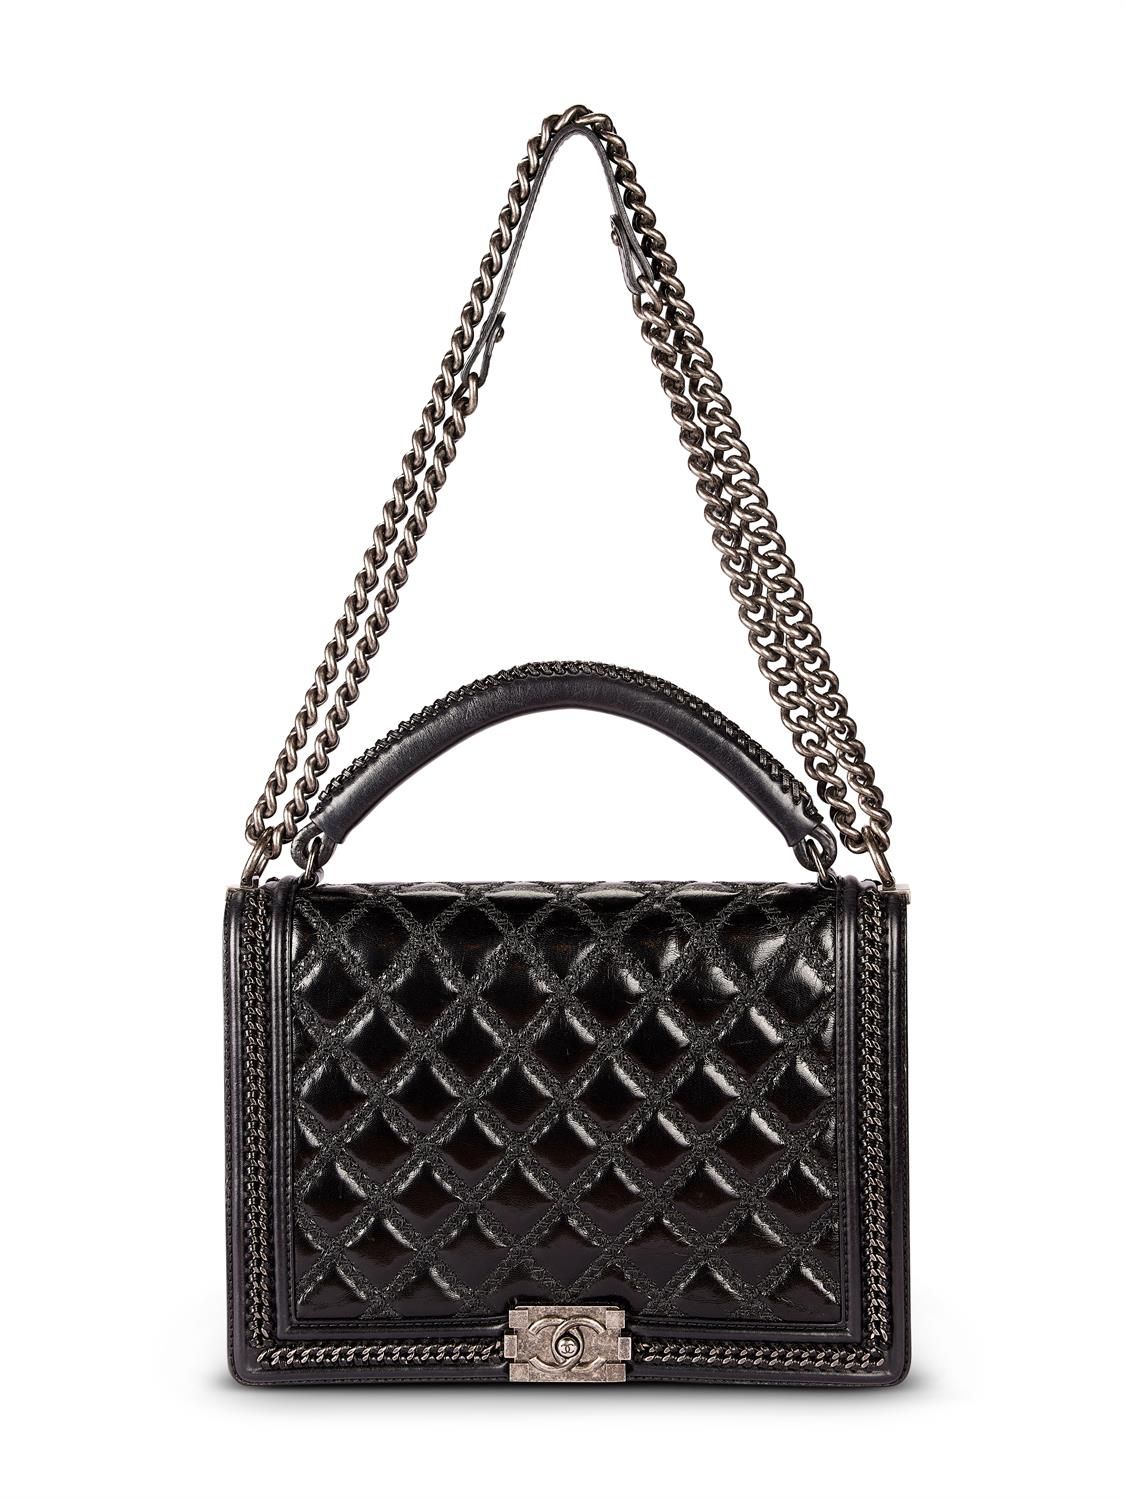 Chanel, Boy, a black calfskin quilted leather shoulder bag Chanel, Boy, a black &hellip;